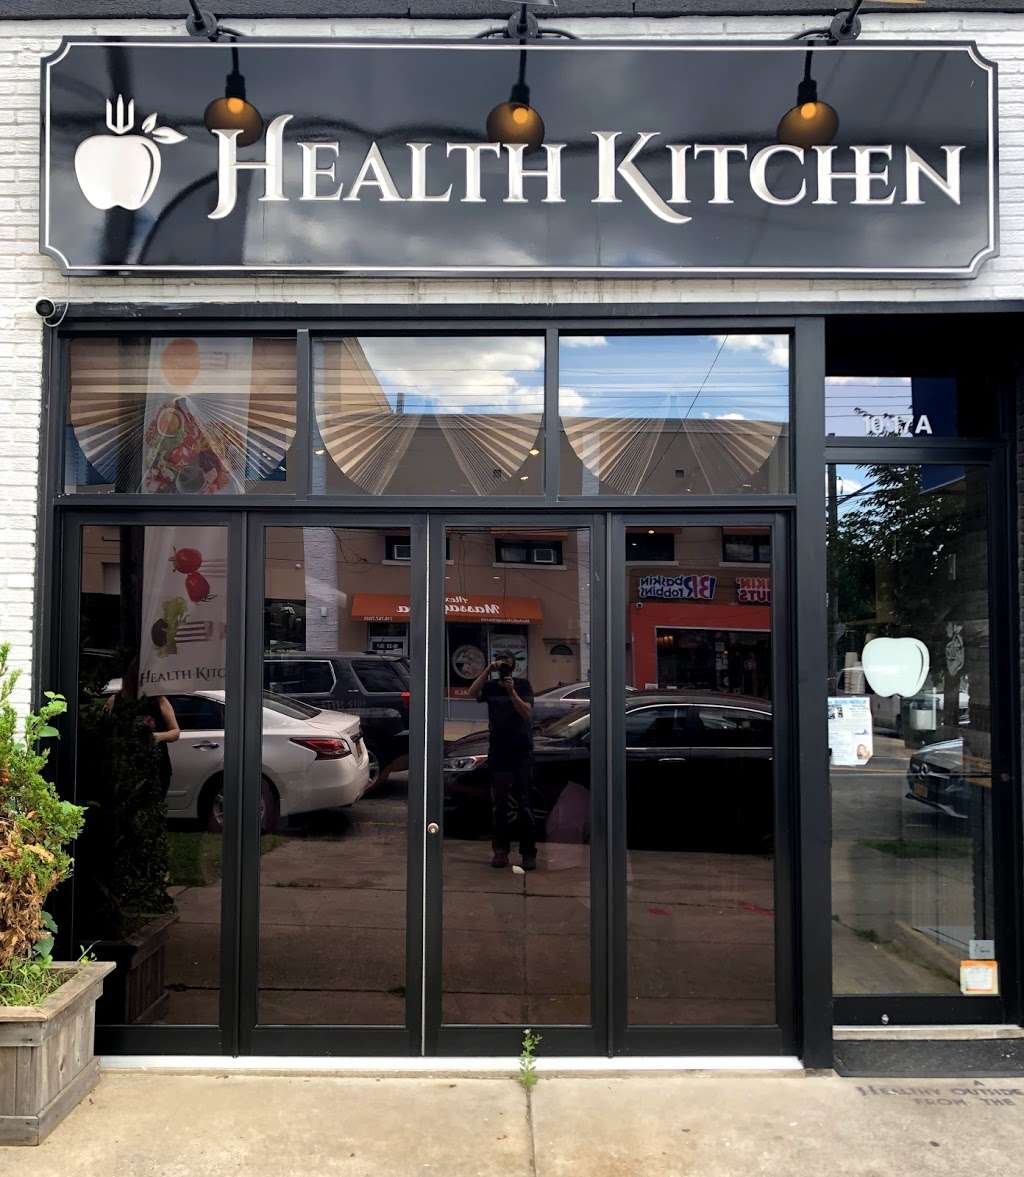 Health Kitchen | 1017 154th St, Whitestone, NY 11357 | Phone: (718) 709-9010